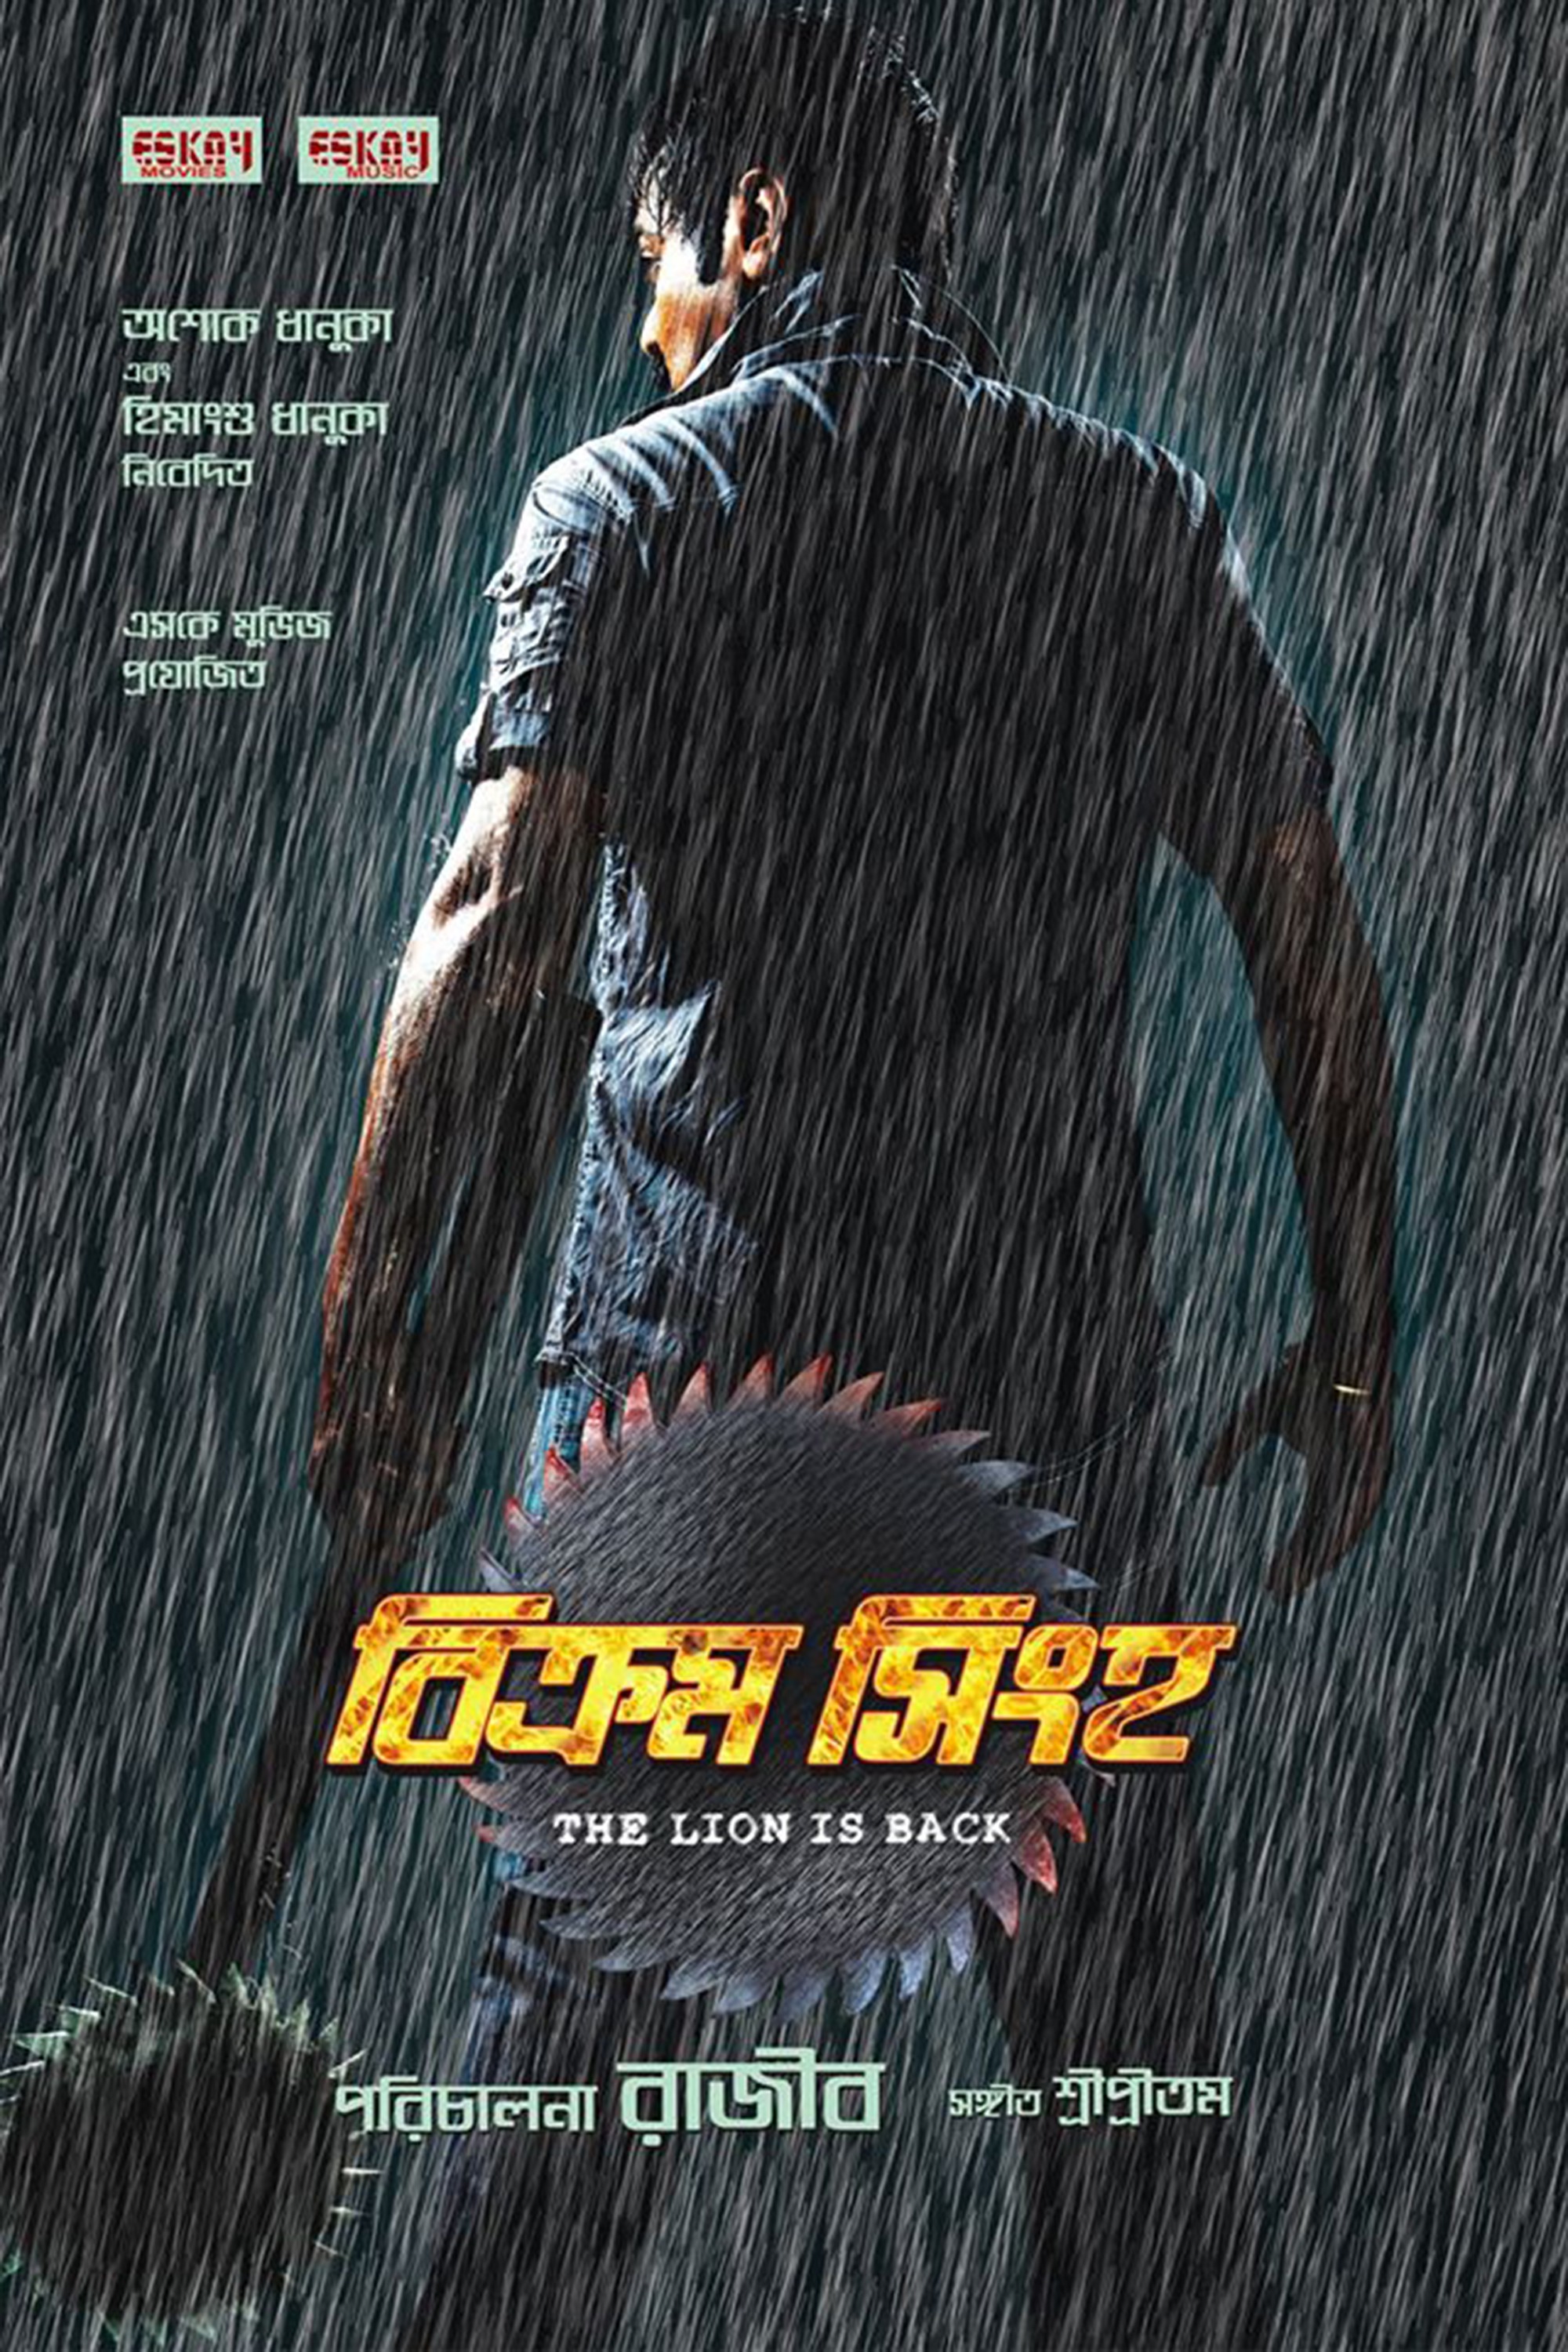 Mega Sized Movie Poster Image for Bikram Singha: The Lion Is Back (#1 of 2)